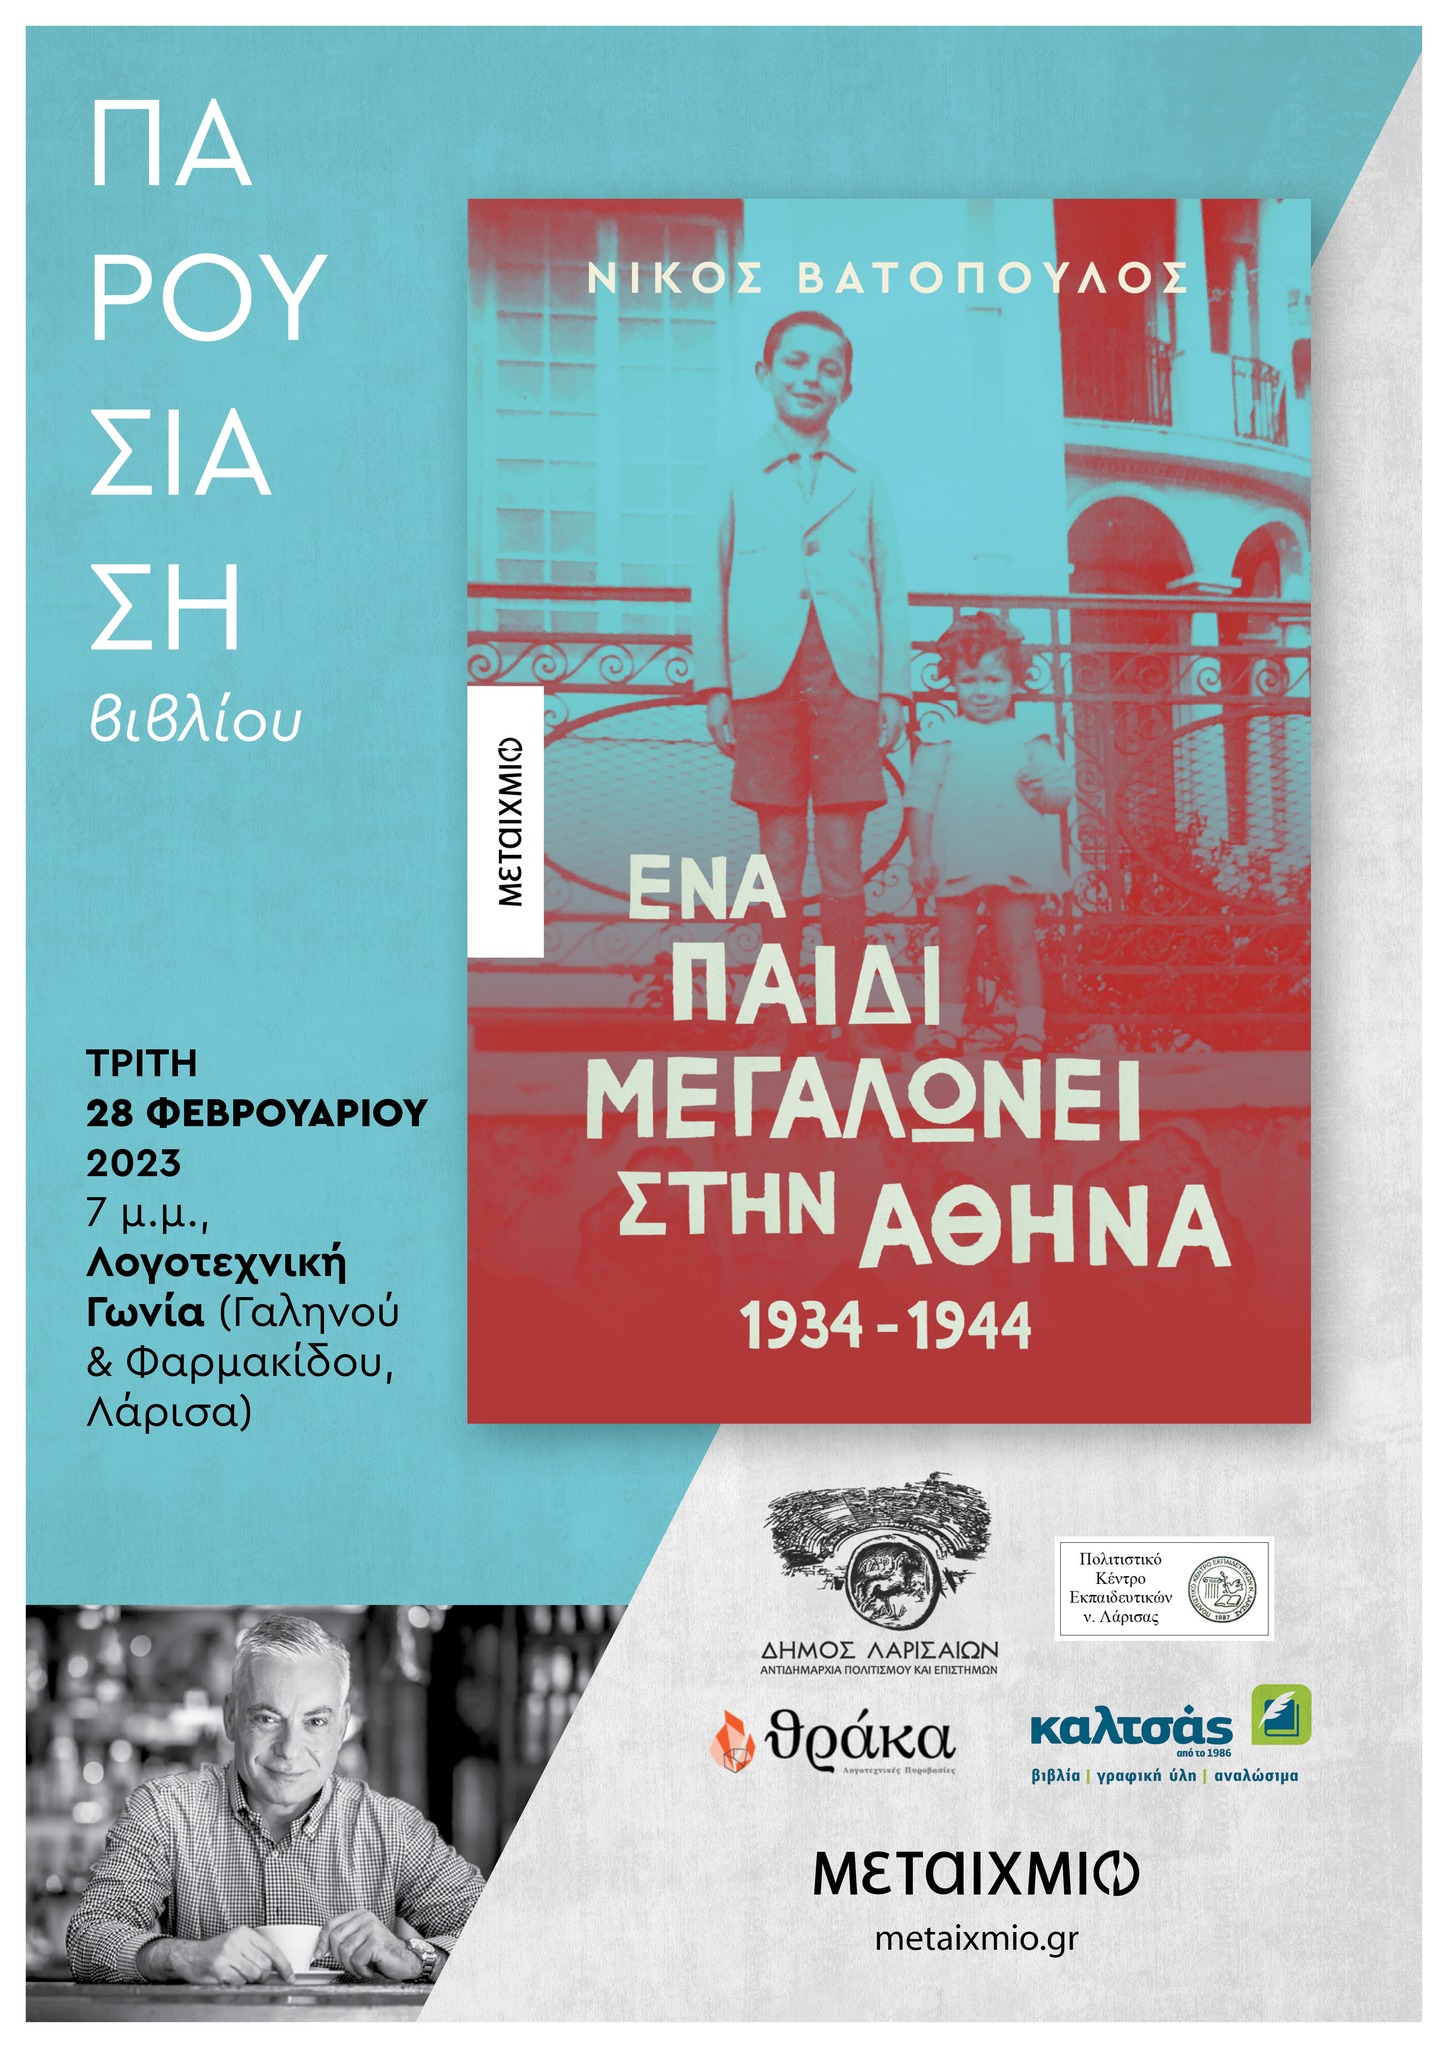 "Ένα παιδί μεγαλώνει στην Αθήνα 1934-1944" του Νίκου Βατόπουλου στη Λογοτεχνική Γωνία